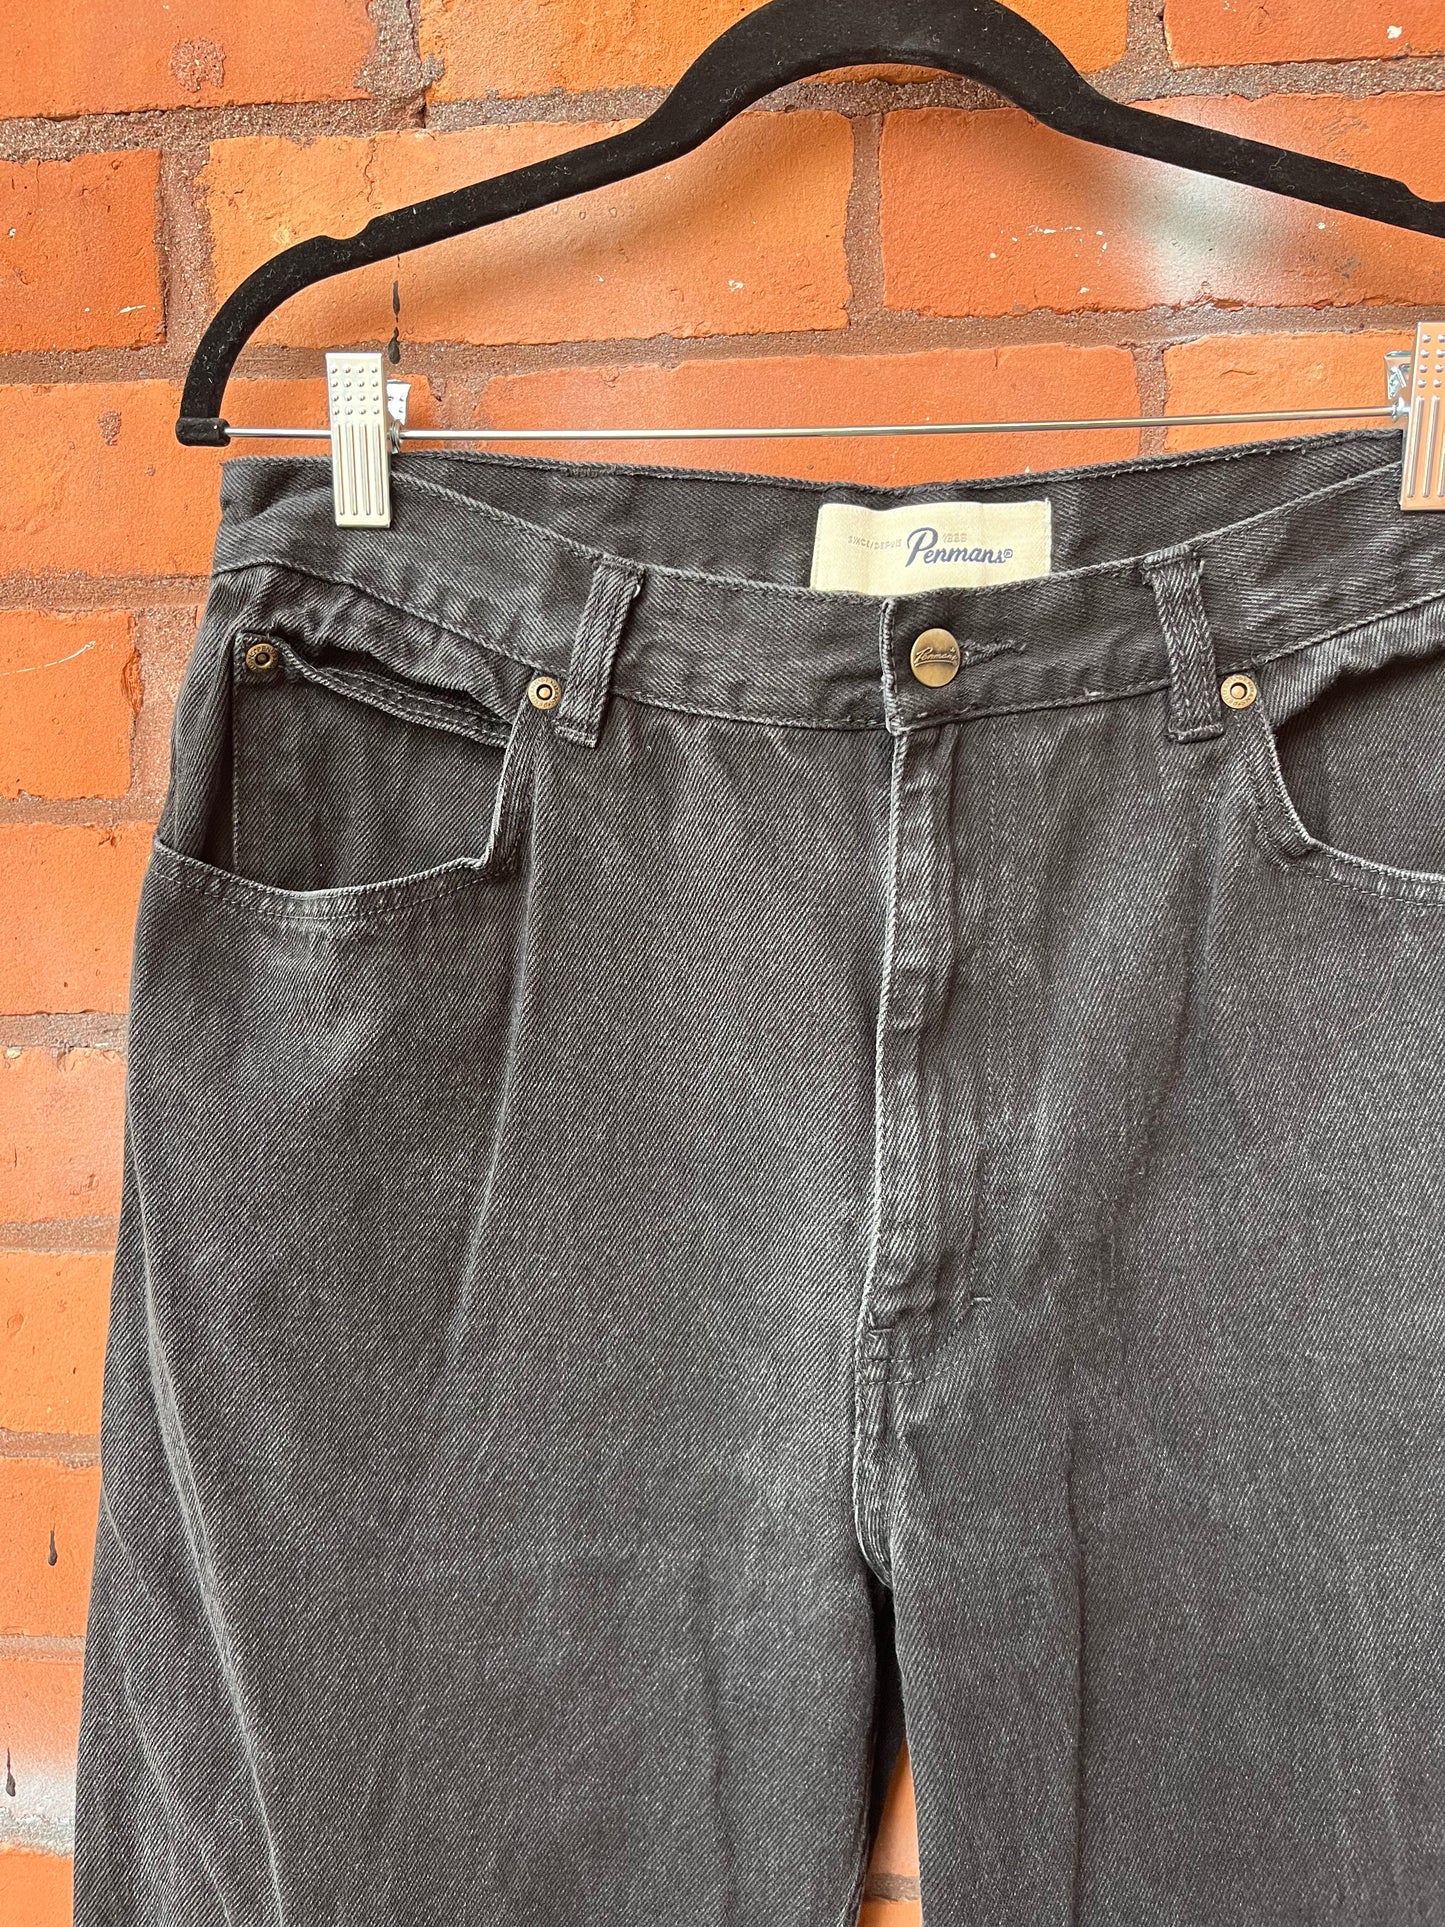 90’s Vintage Faded Black Straight Leg Jeans / 36 waist